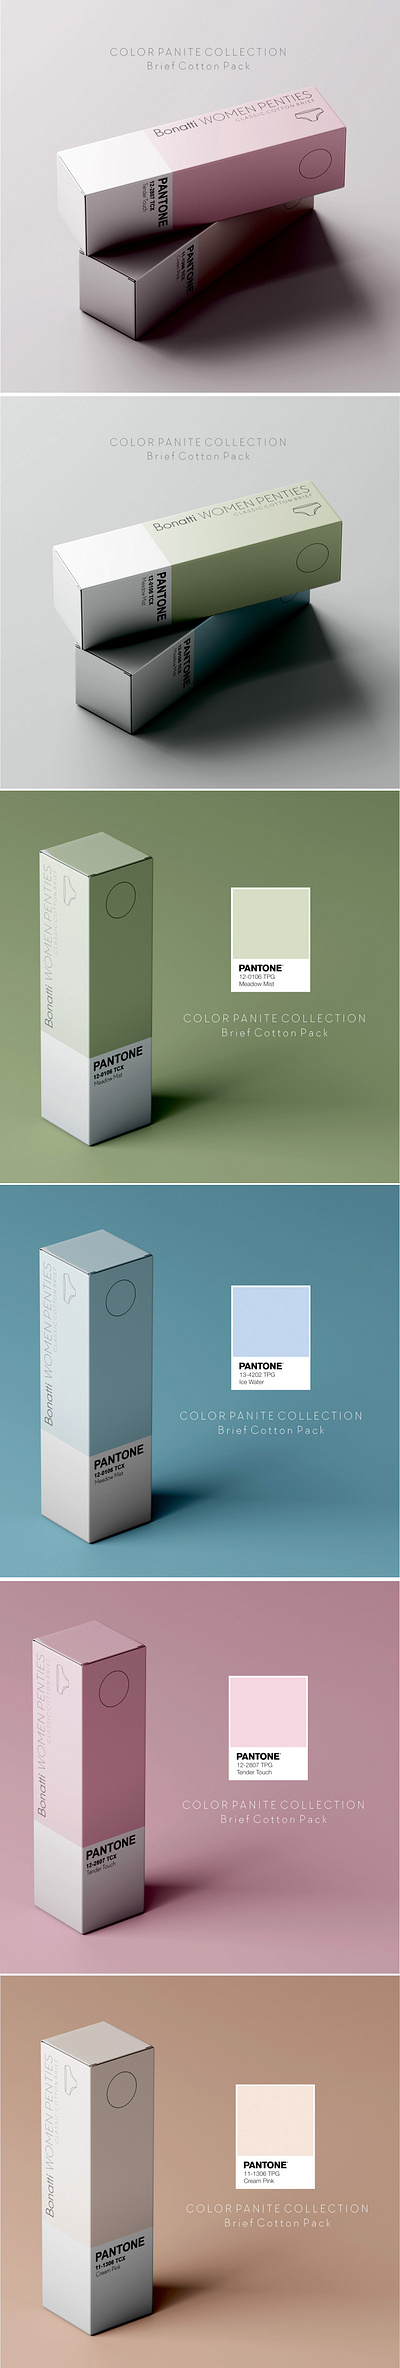 PANTONE Underwear Package Design branding design graphic design package design